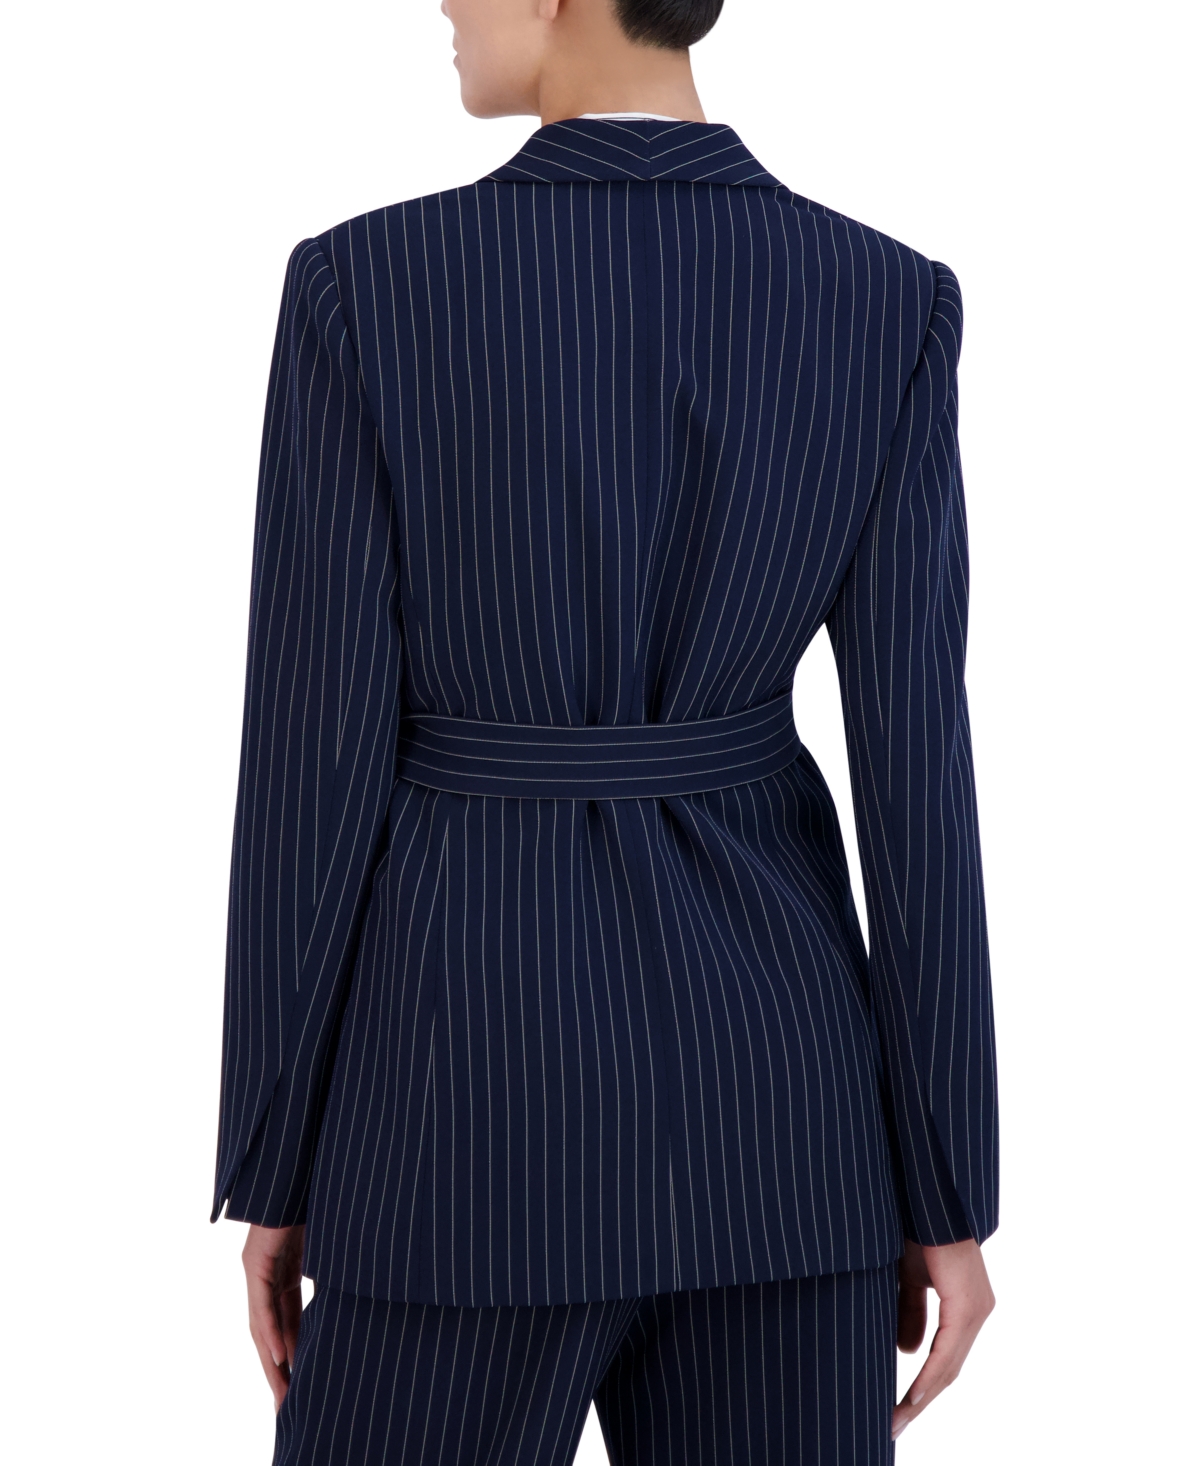 Shop Bcbg New York Women's Pinstripe Belted Blazer